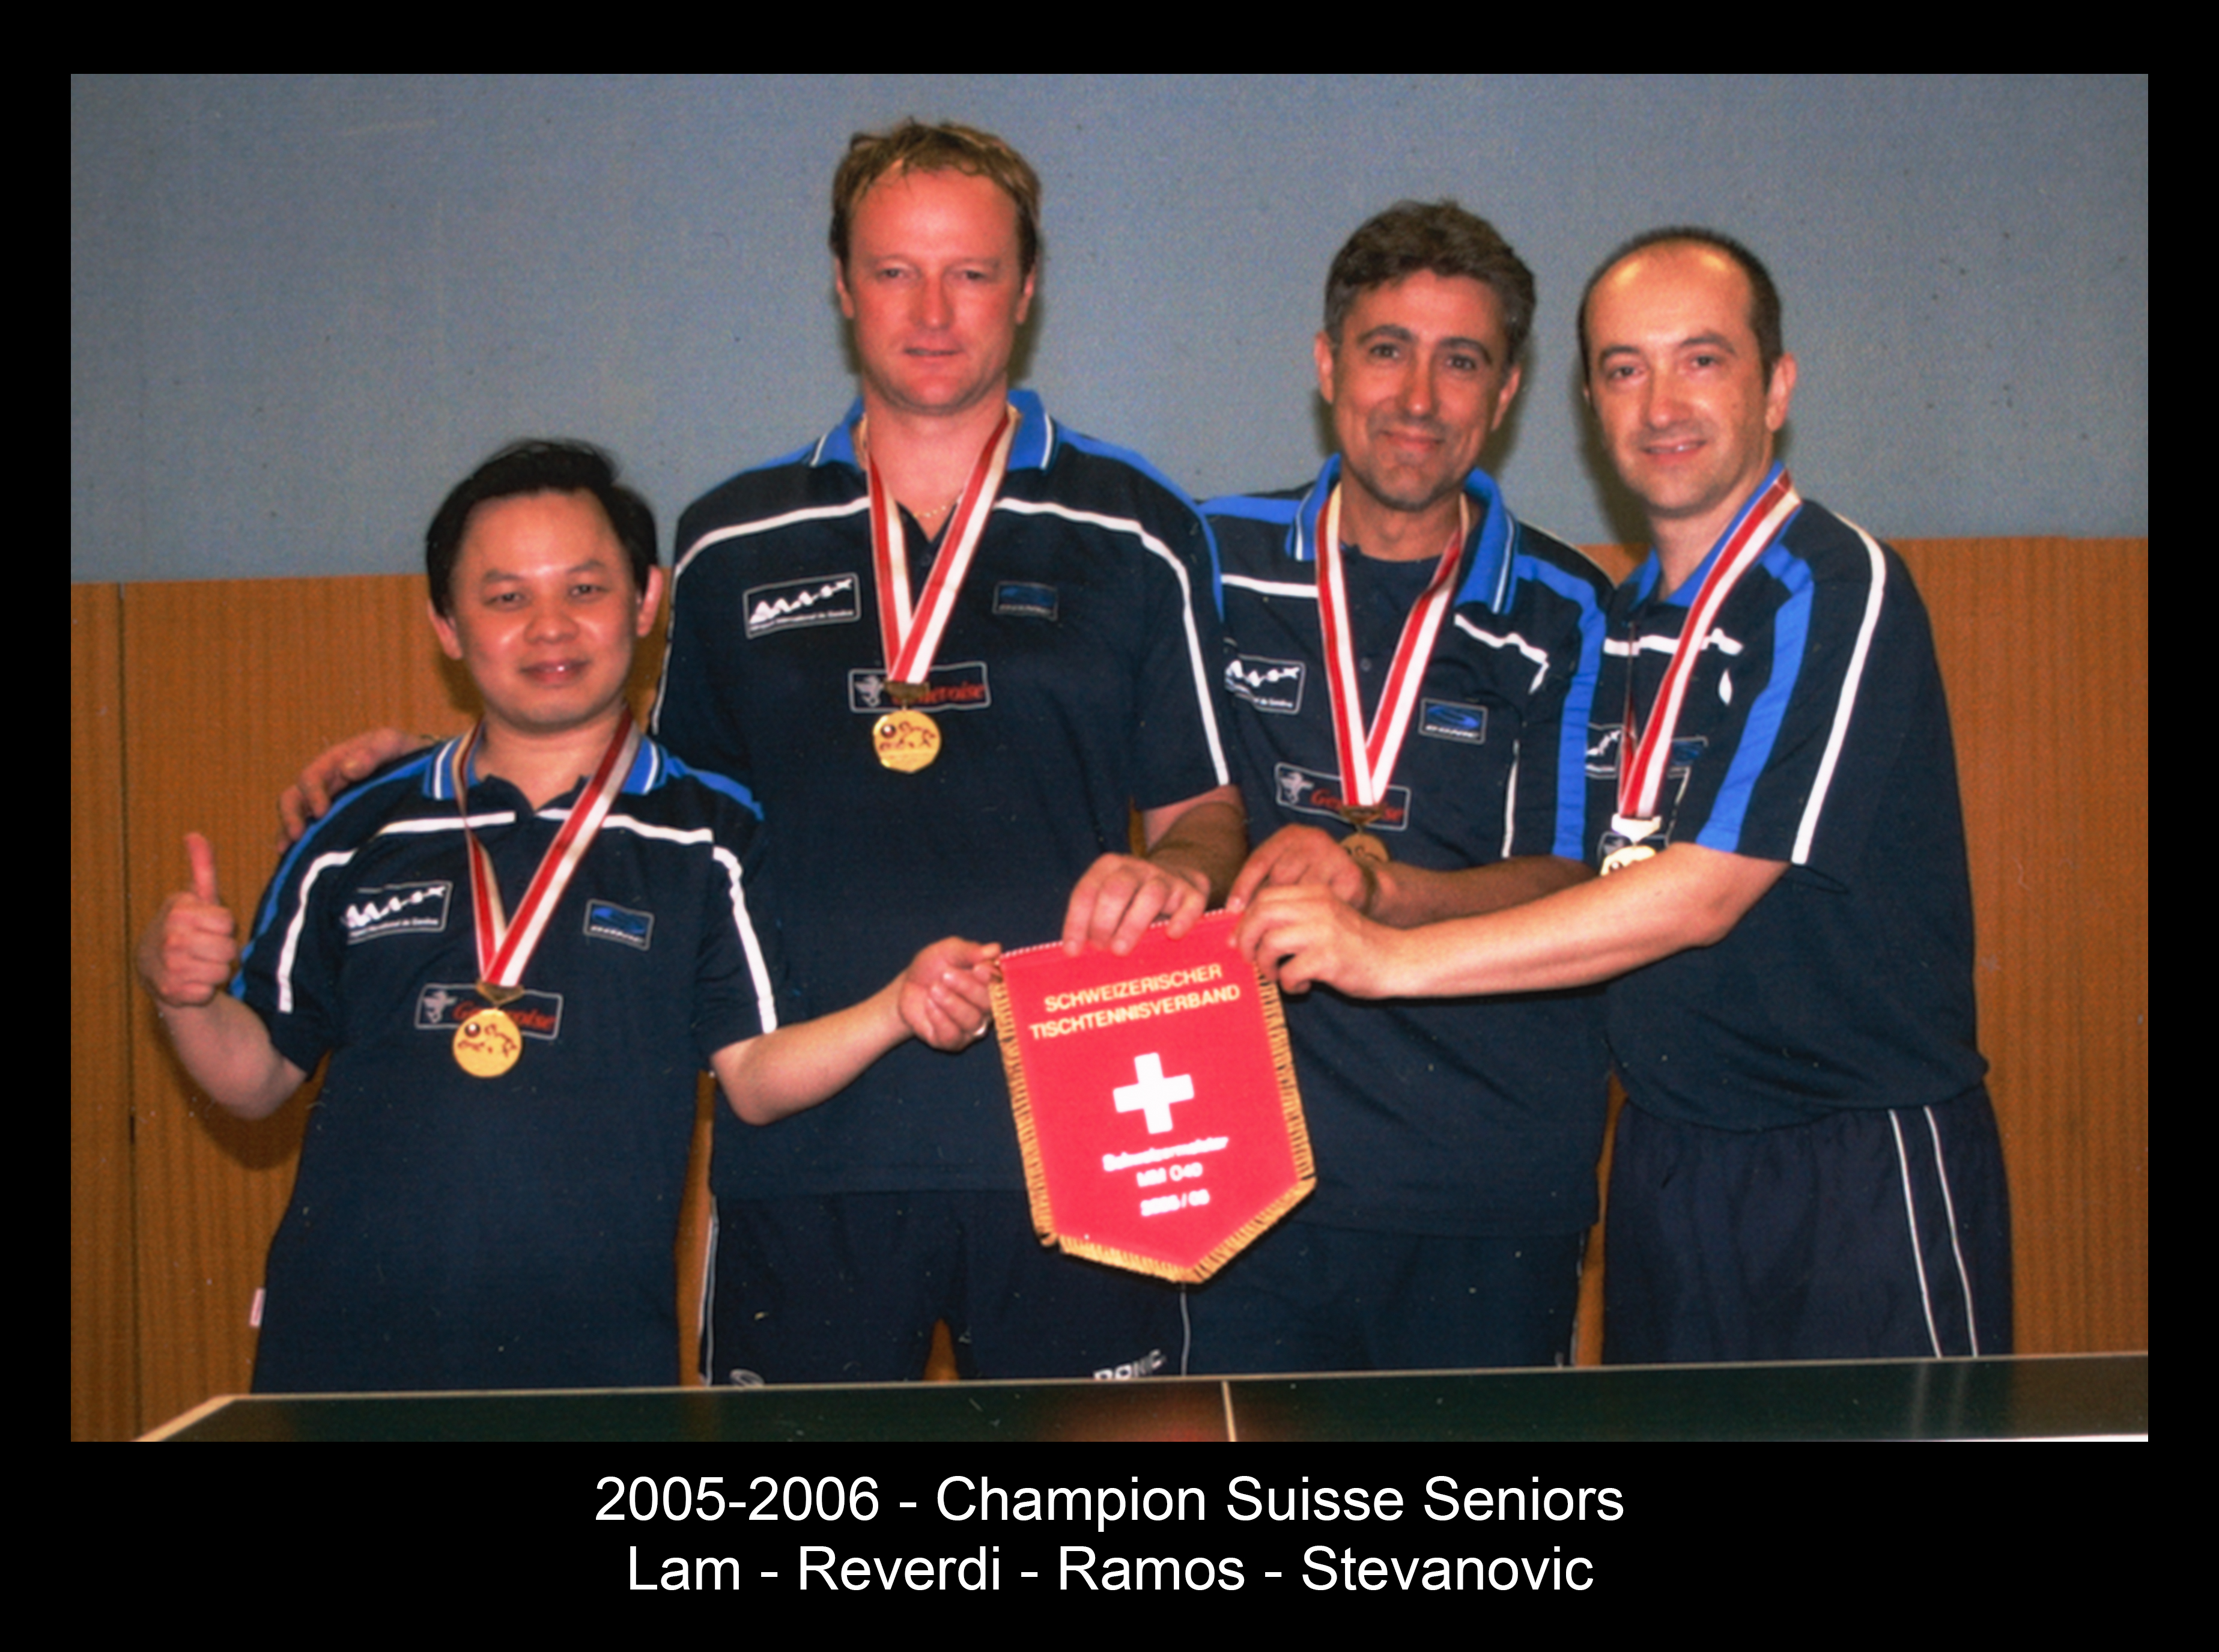 2005-2006 - Champion Suisse Seniors - Lam - Reverdi - Ramos - Stevanovic